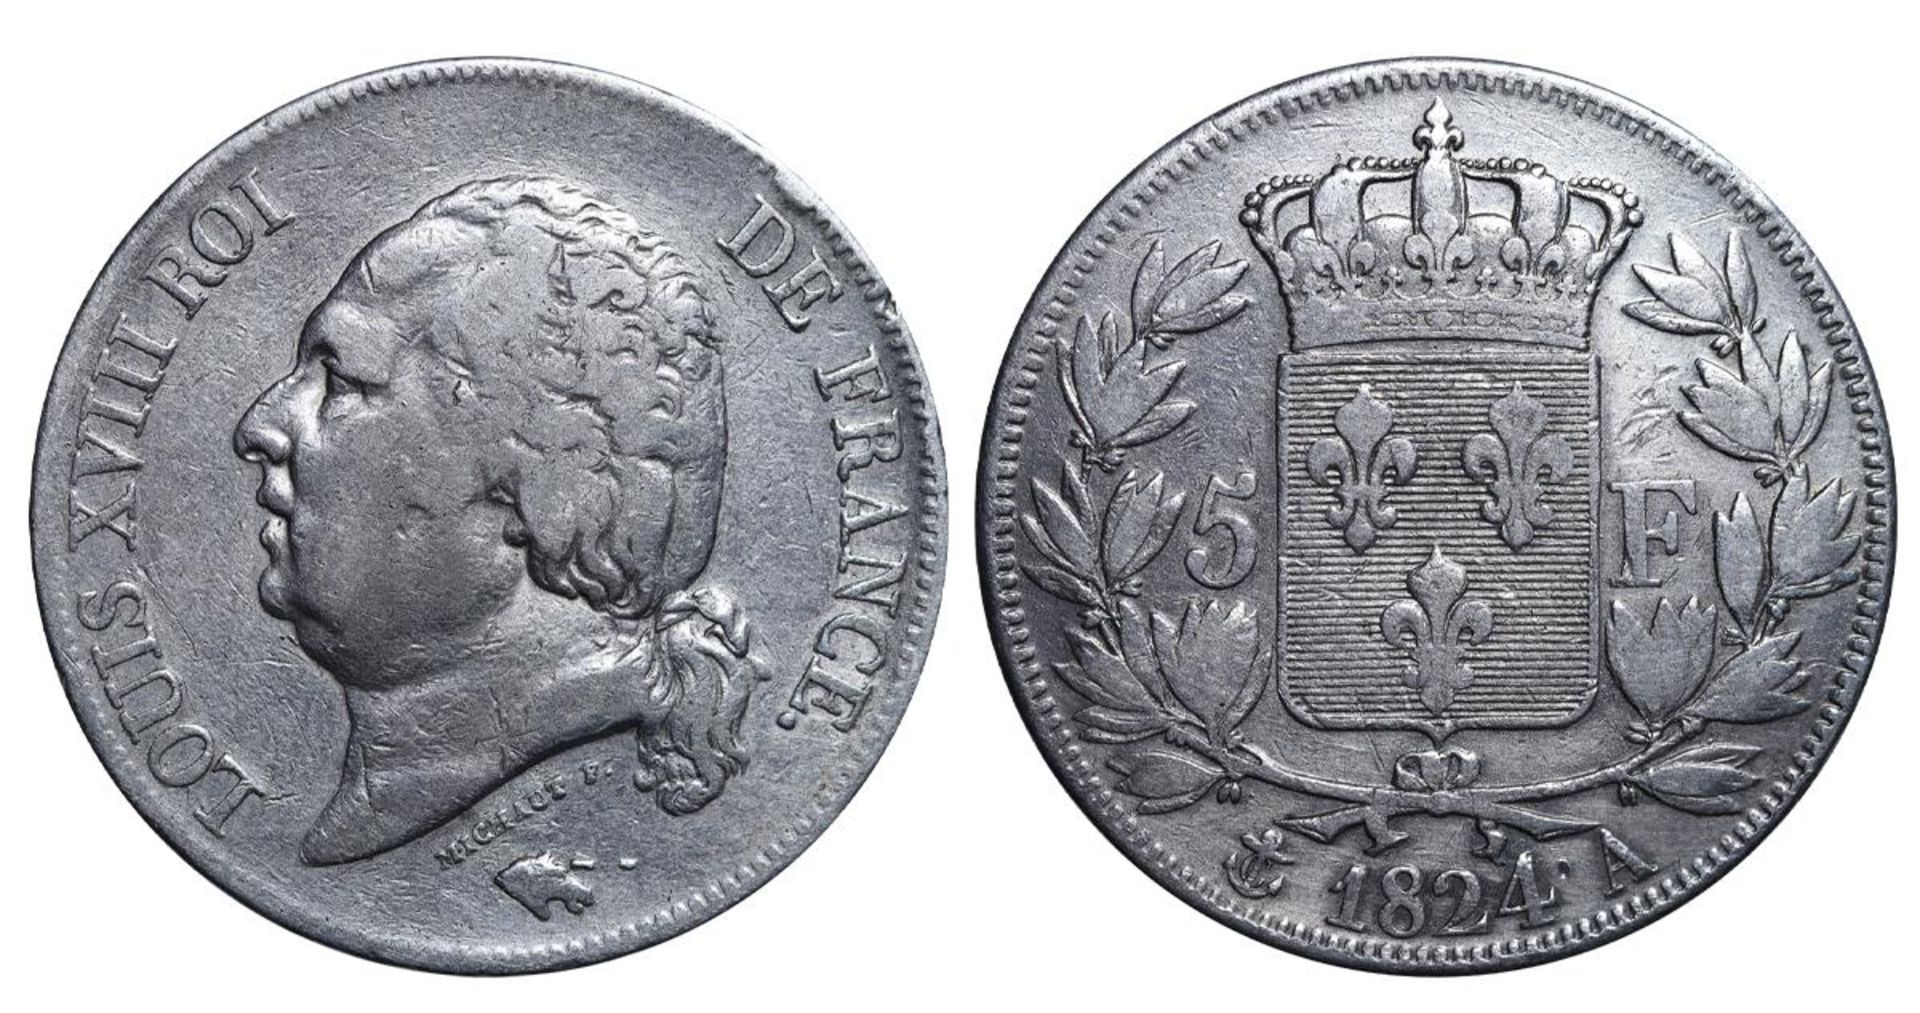 France, 5 Francs, 1824 year, A